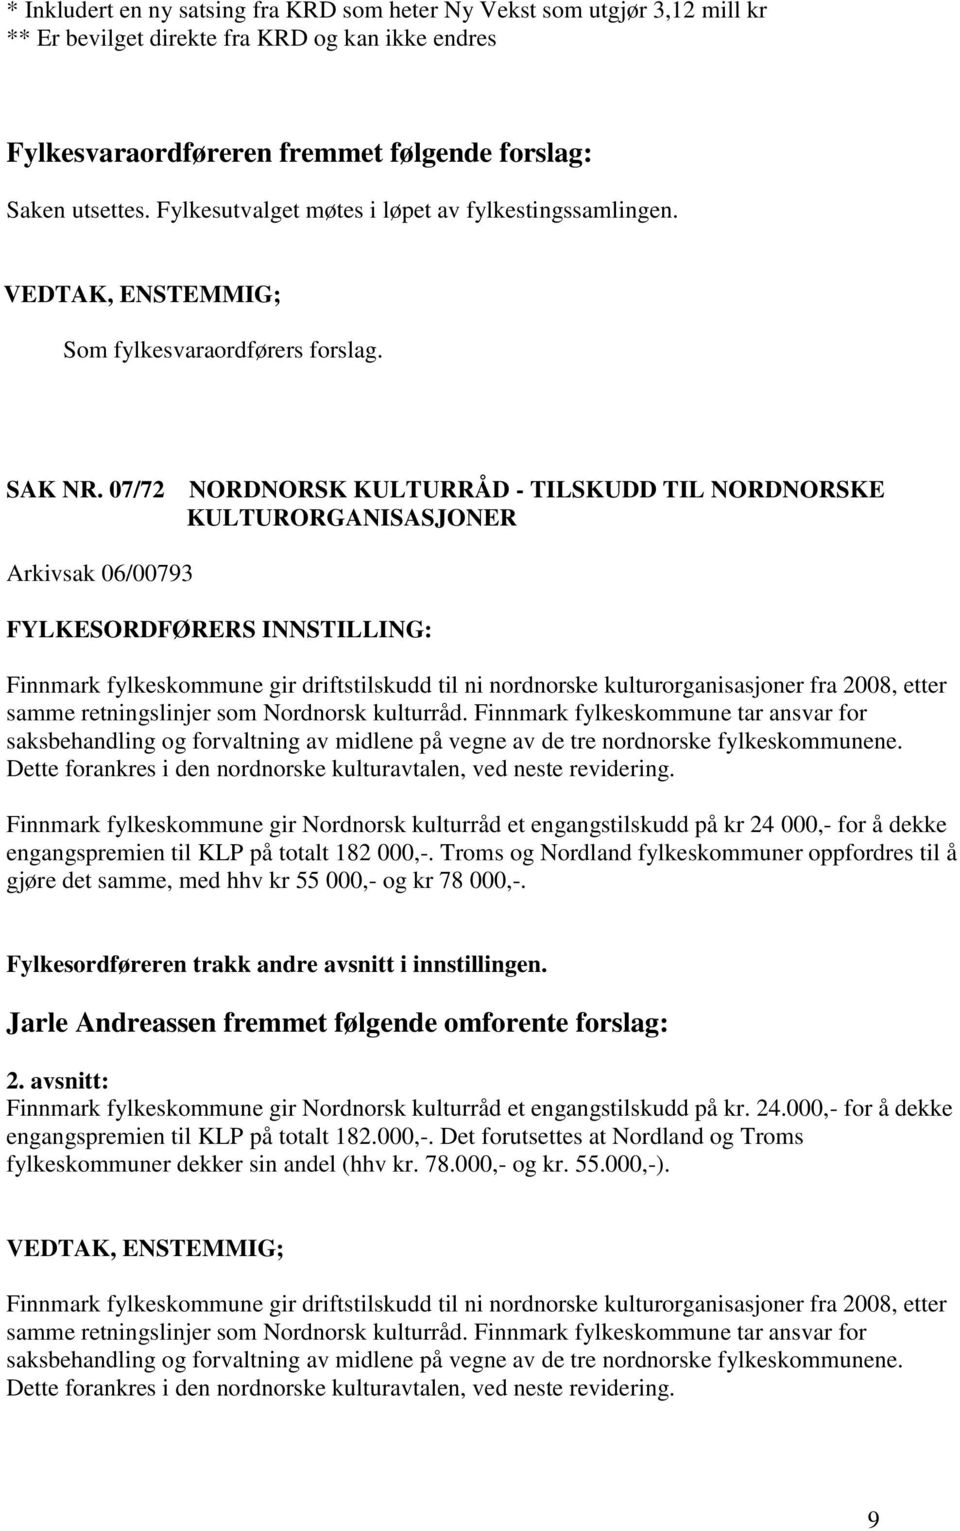 07/72 NORDNORSK KULTURRÅD - TILSKUDD TIL NORDNORSKE KULTURORGANISASJONER Arkivsak 06/00793 Finnmark fylkeskommune gir driftstilskudd til ni nordnorske kulturorganisasjoner fra 2008, etter samme